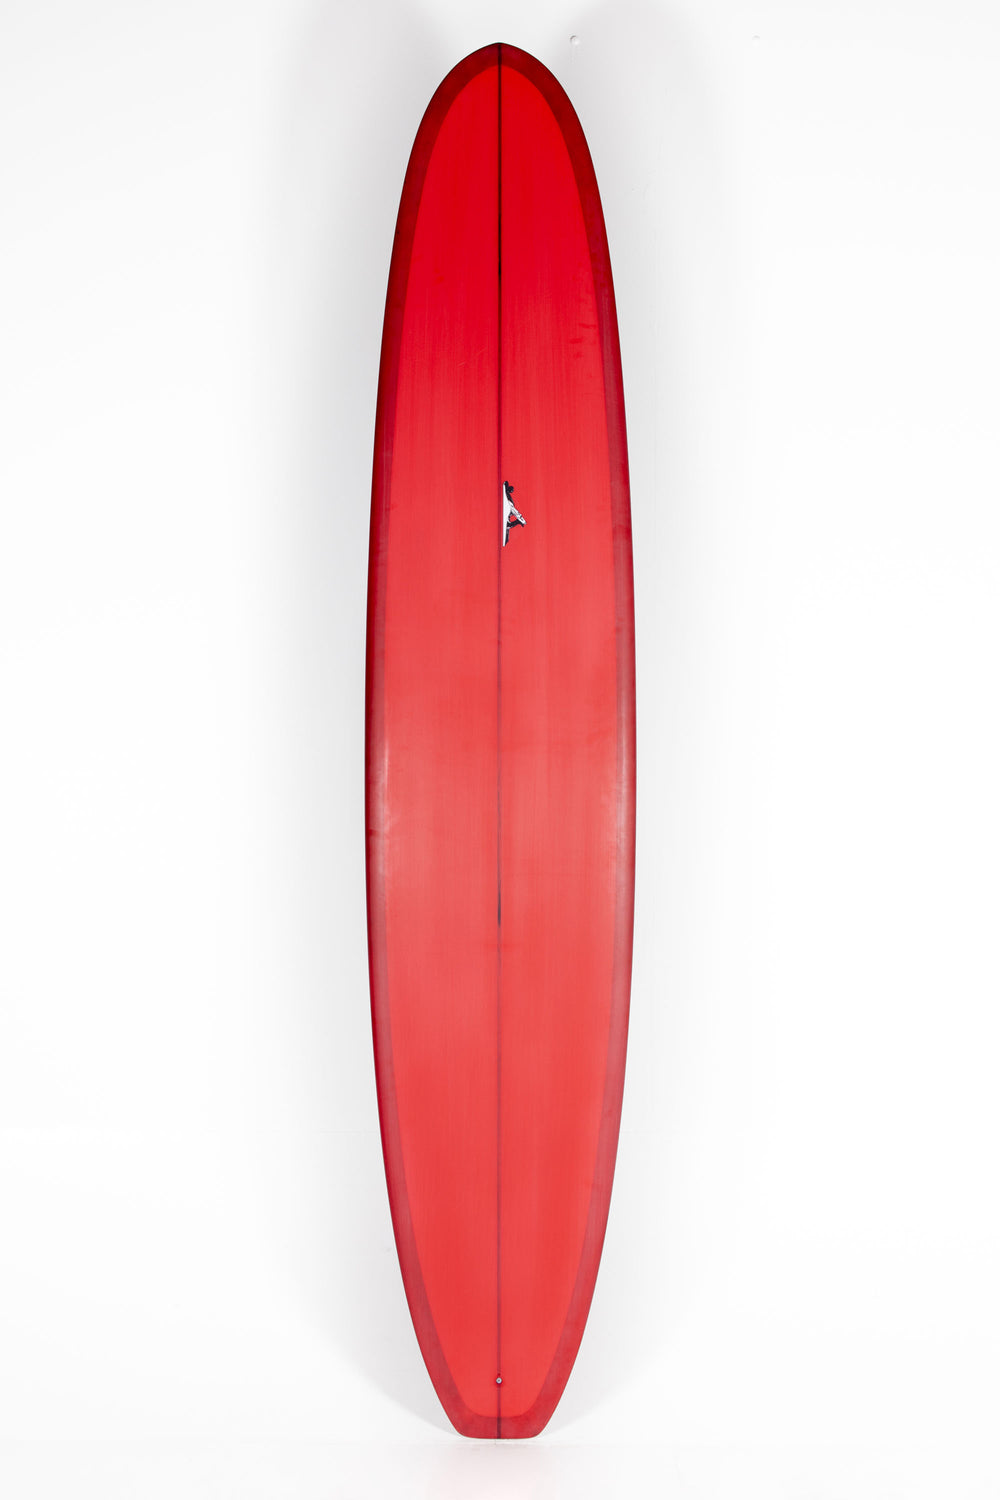 Pukas Surf Shop - Thomas Surfboards - HARRISON CONCEPT - 10'0